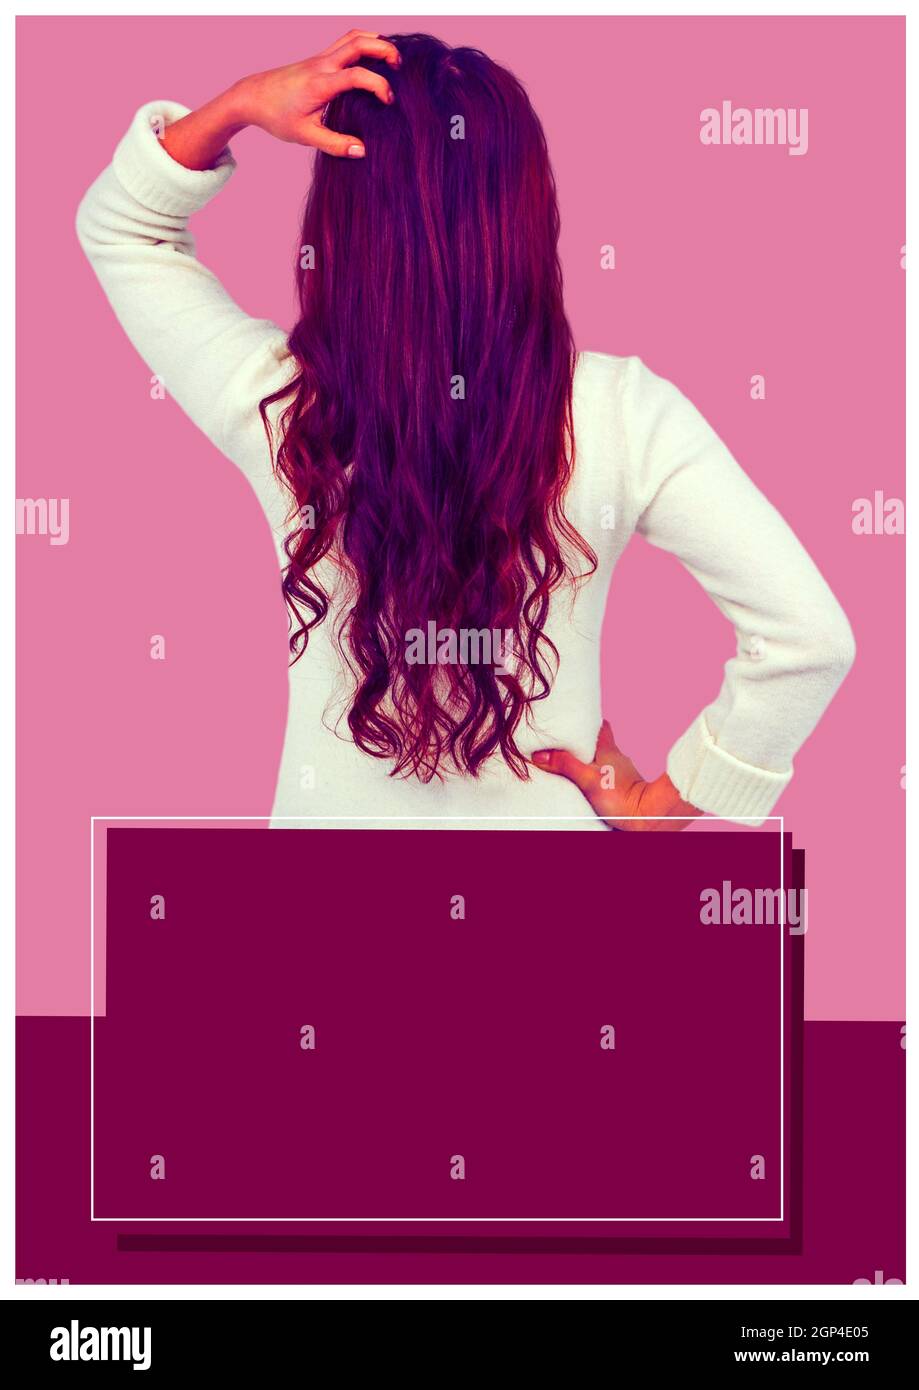 Composizione della donna mista che tocca i capelli su sfondo rosa Foto Stock